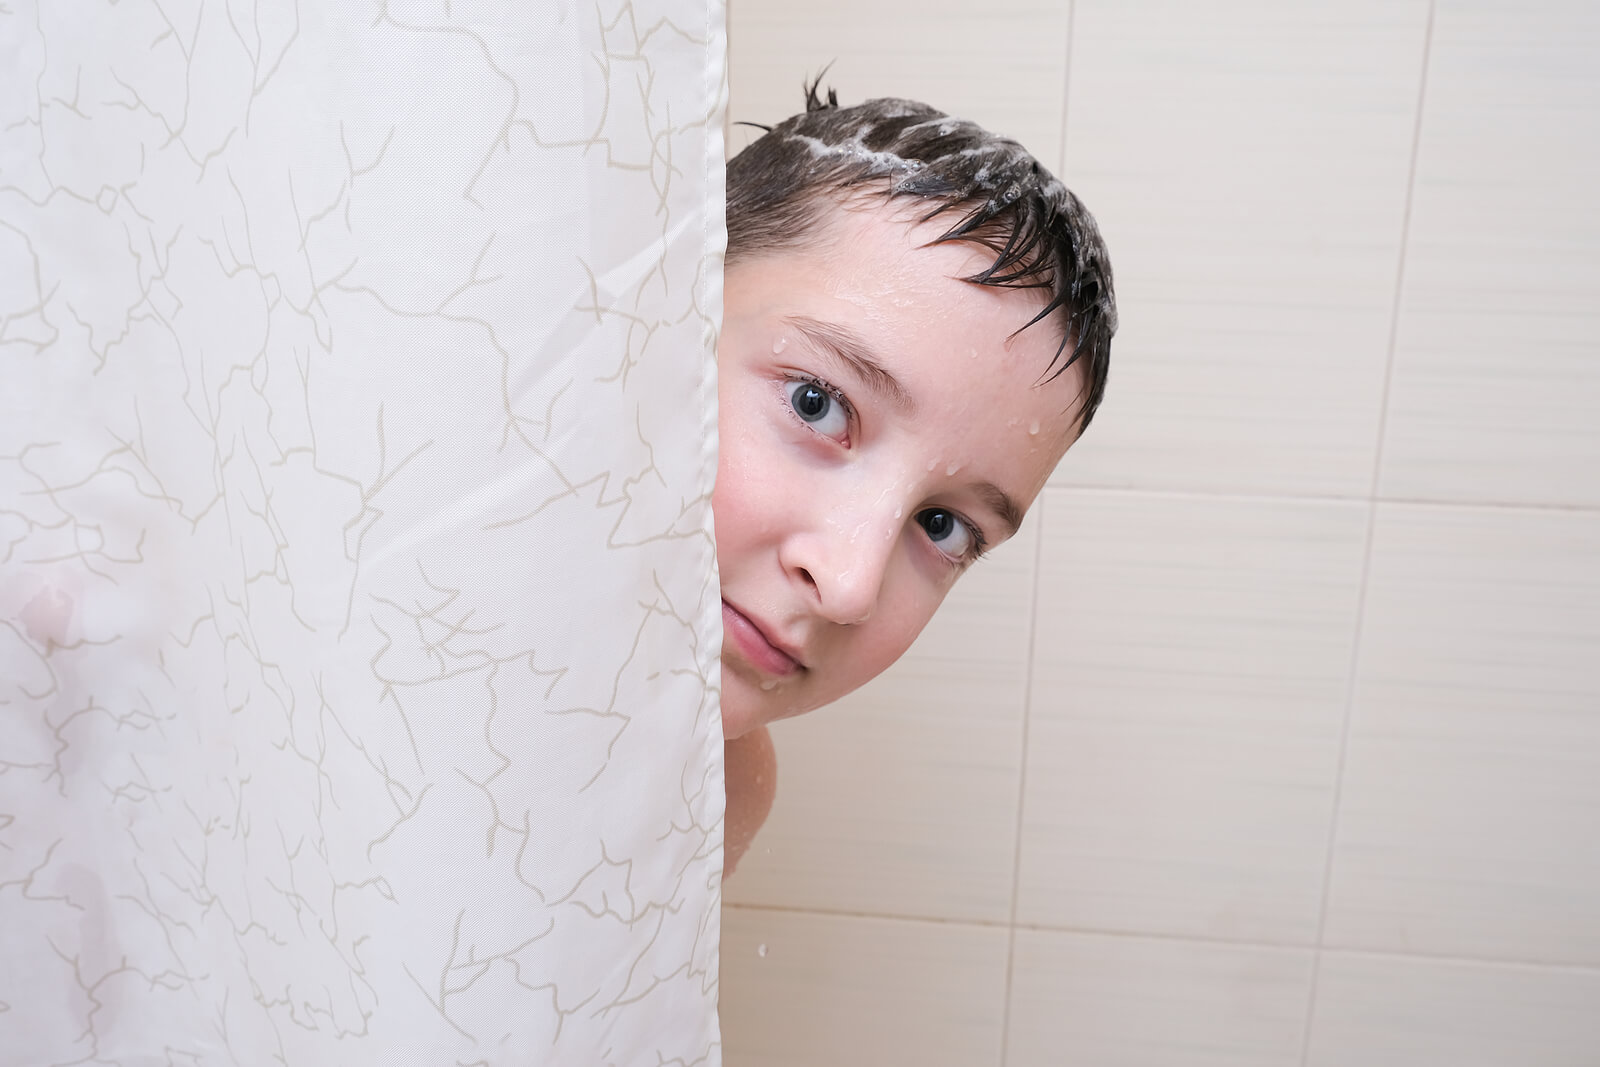 La falta de higiene en los adolescentes: ¿qué hacer?